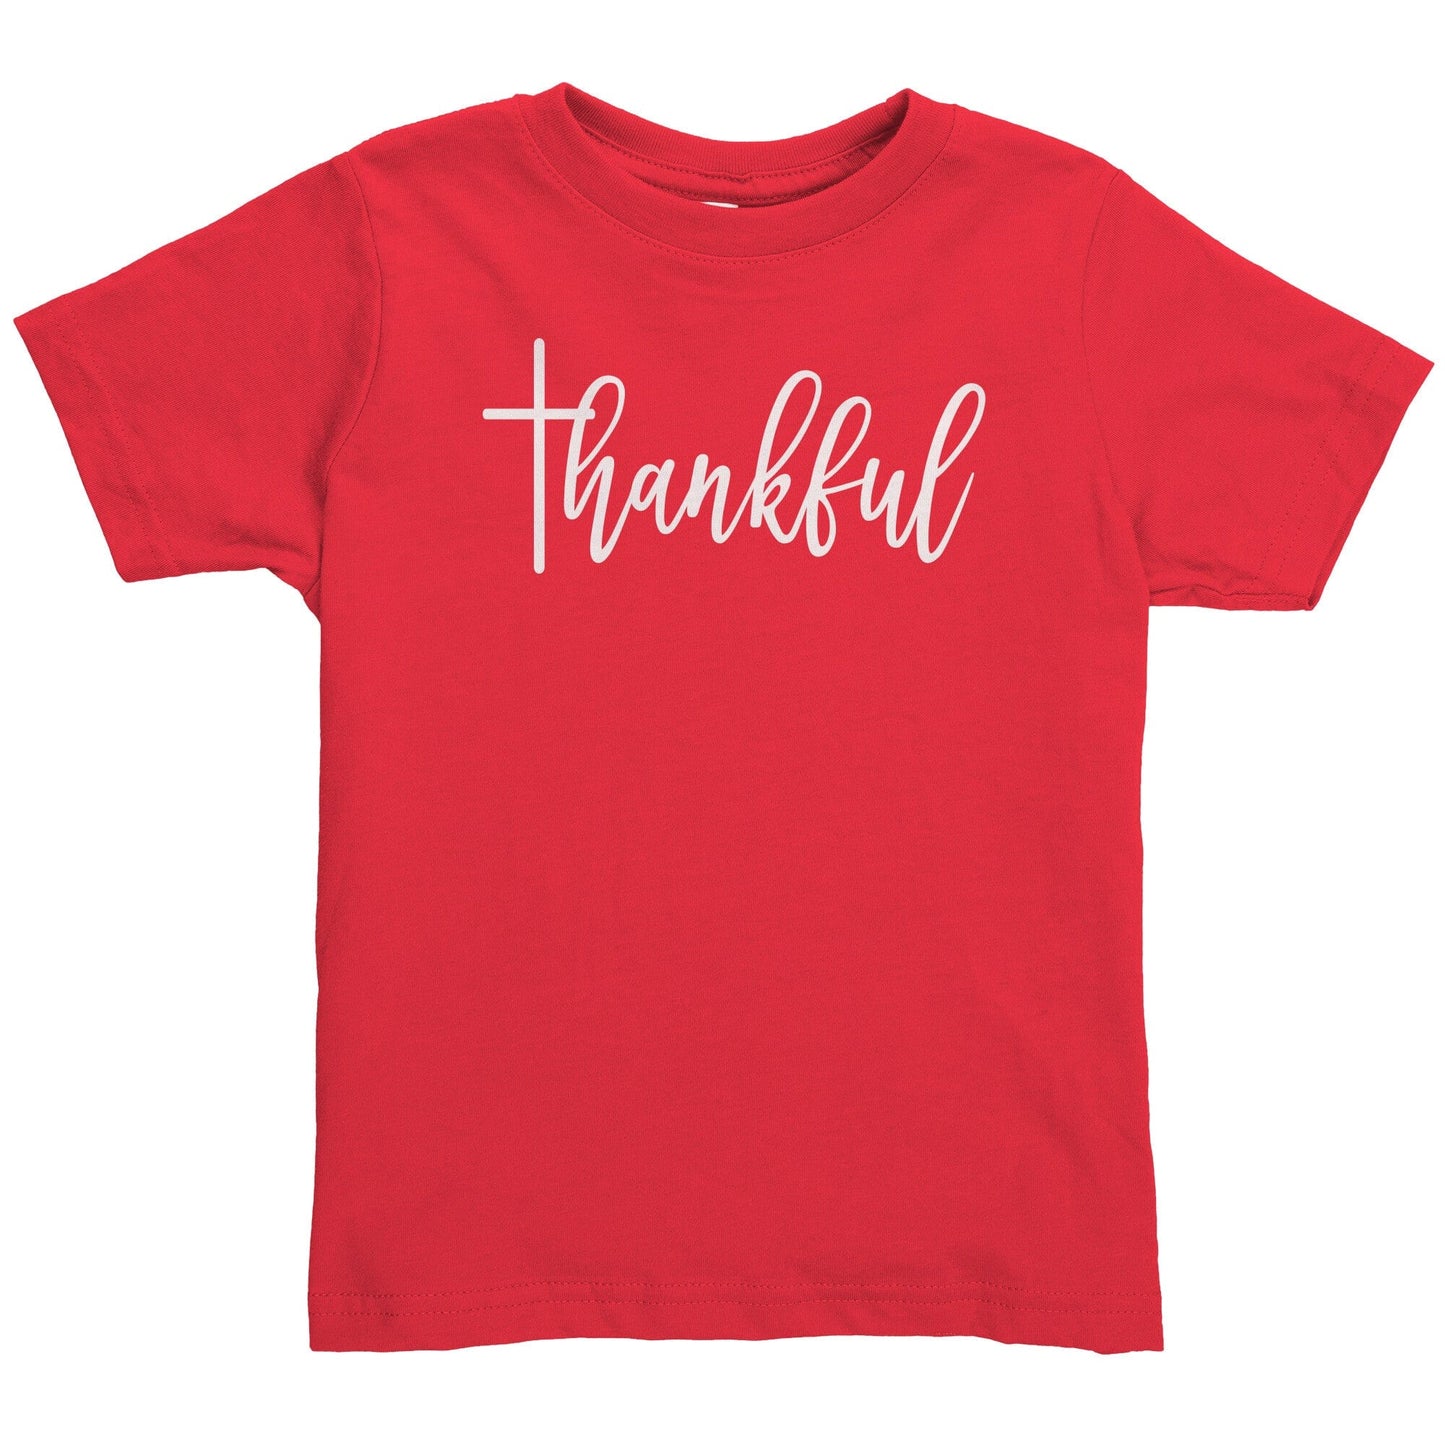 Thankful Toddler Shirt